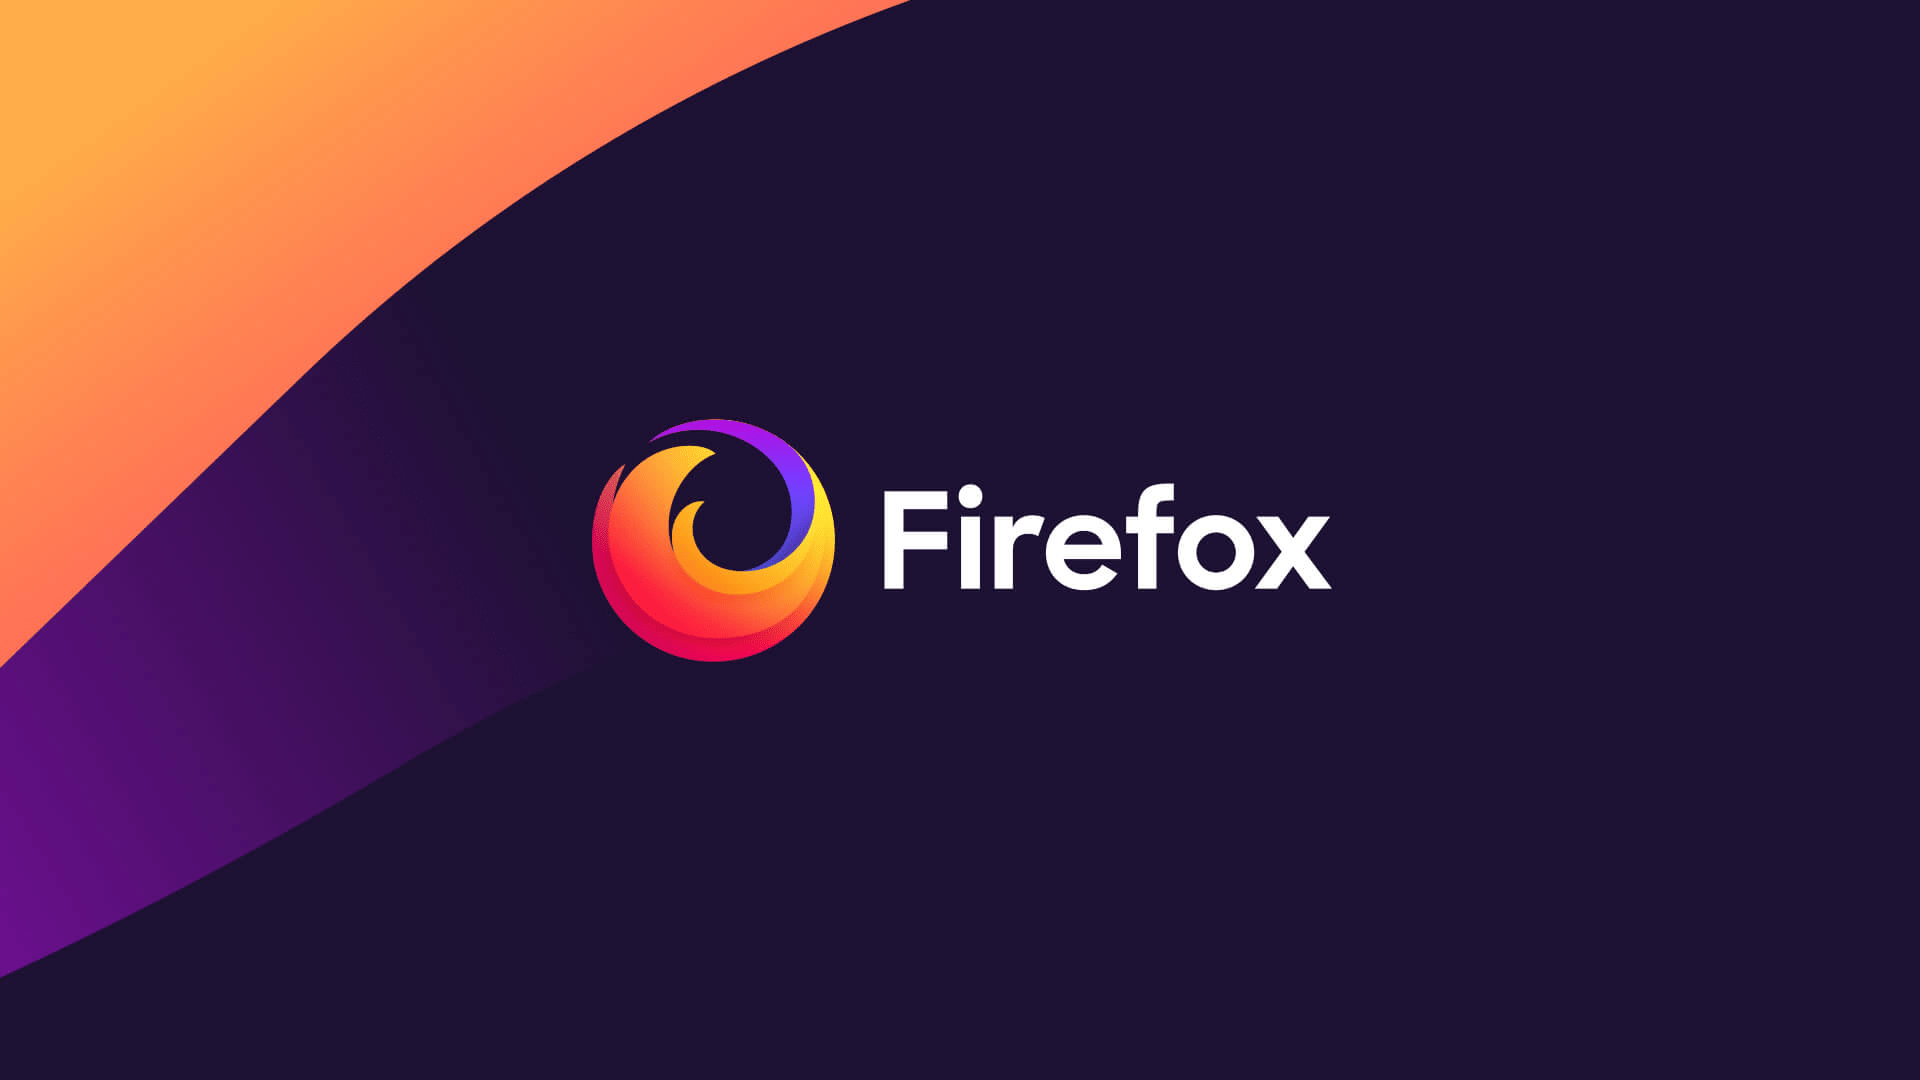 Firefox ya puede traducir páginas sin perder la privacidad - 5 - junio 3, 2022